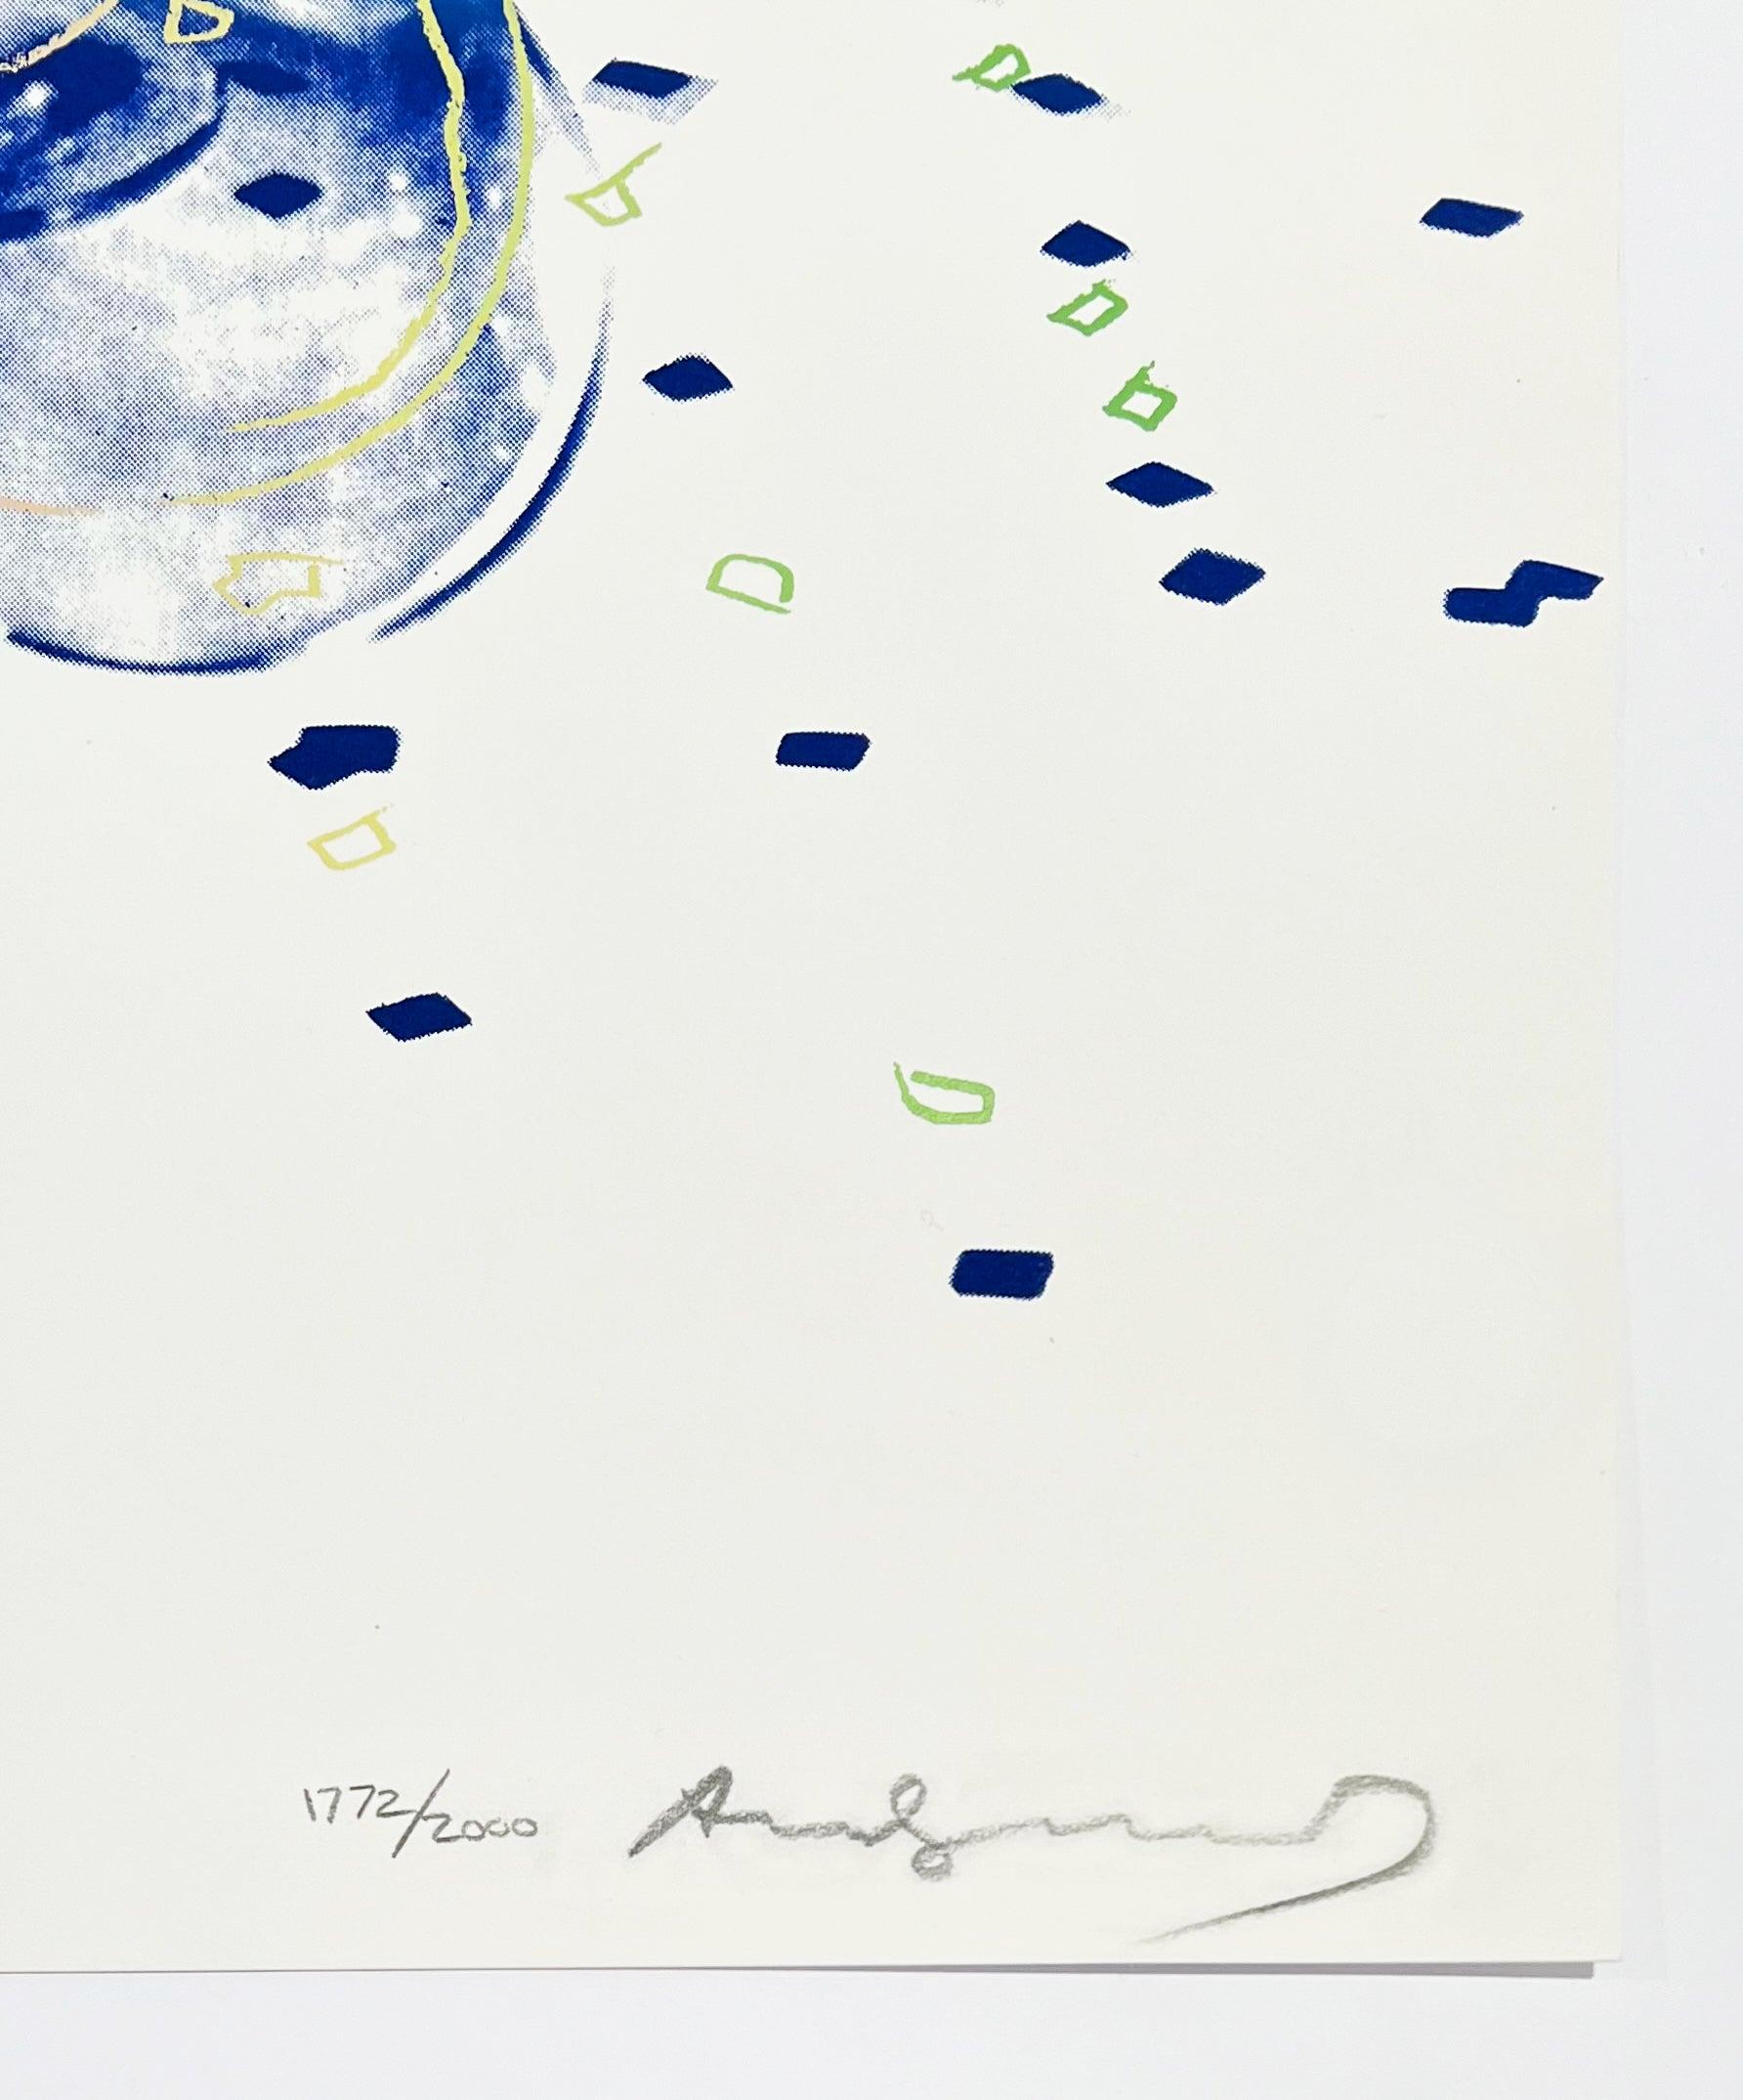 Artiste : Andy Warhol
Titre : Comité 2000
Médium : Sérigraphie sur panneau Lenox Museum
Date : 1982
Édition : 1772/2000
Taille du cadre : 37